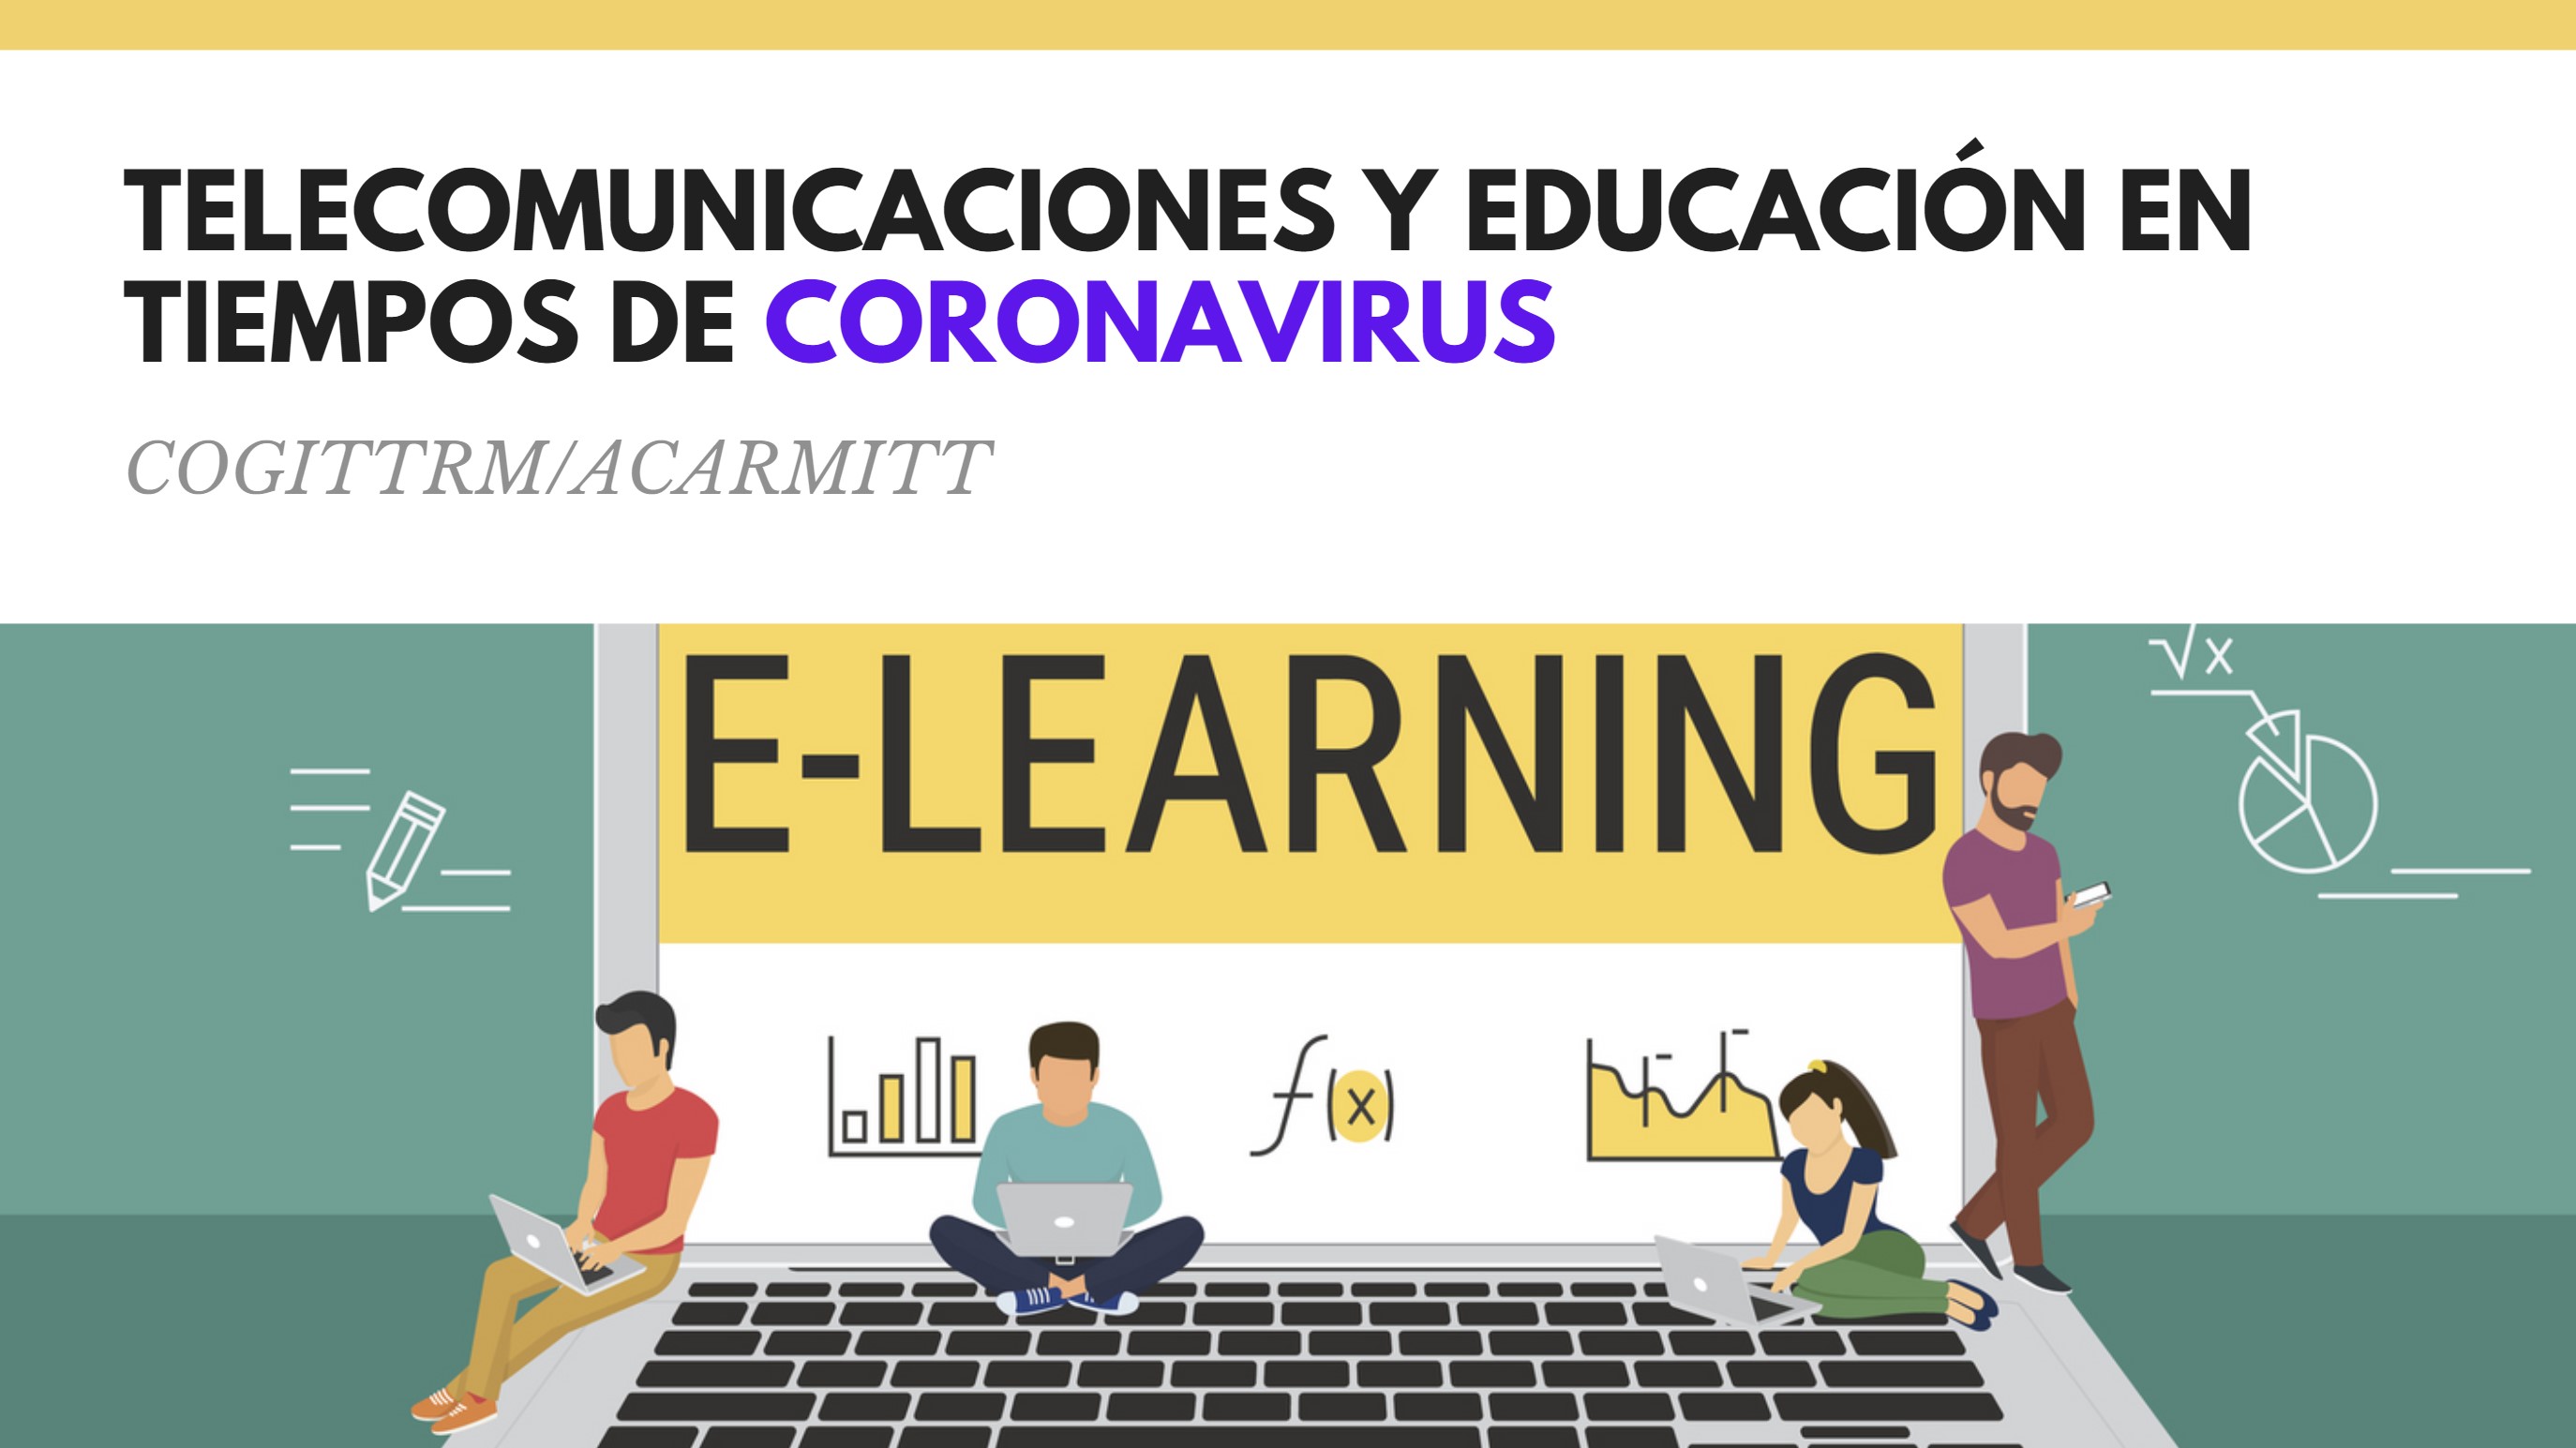 TELECOMUNICACIONES Y EDUCACIÓN EN TIEMPOS DE CORONAVIRUS